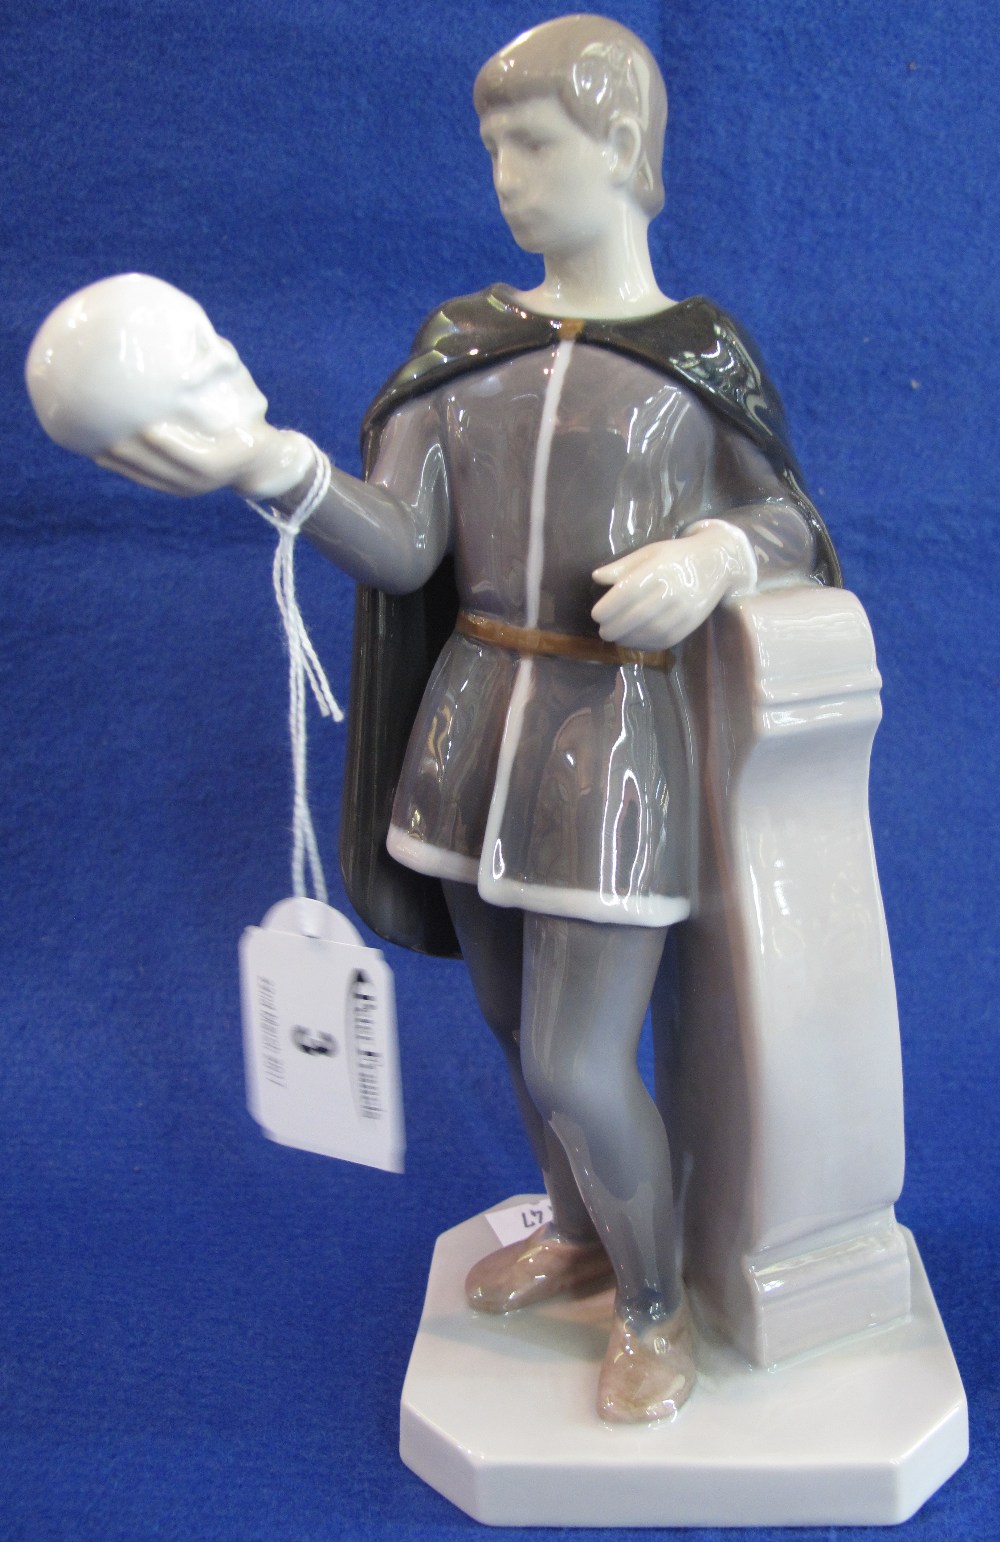 B & G Copenhagen porcelain figure of Hamlet, "Alas poor Yorick...